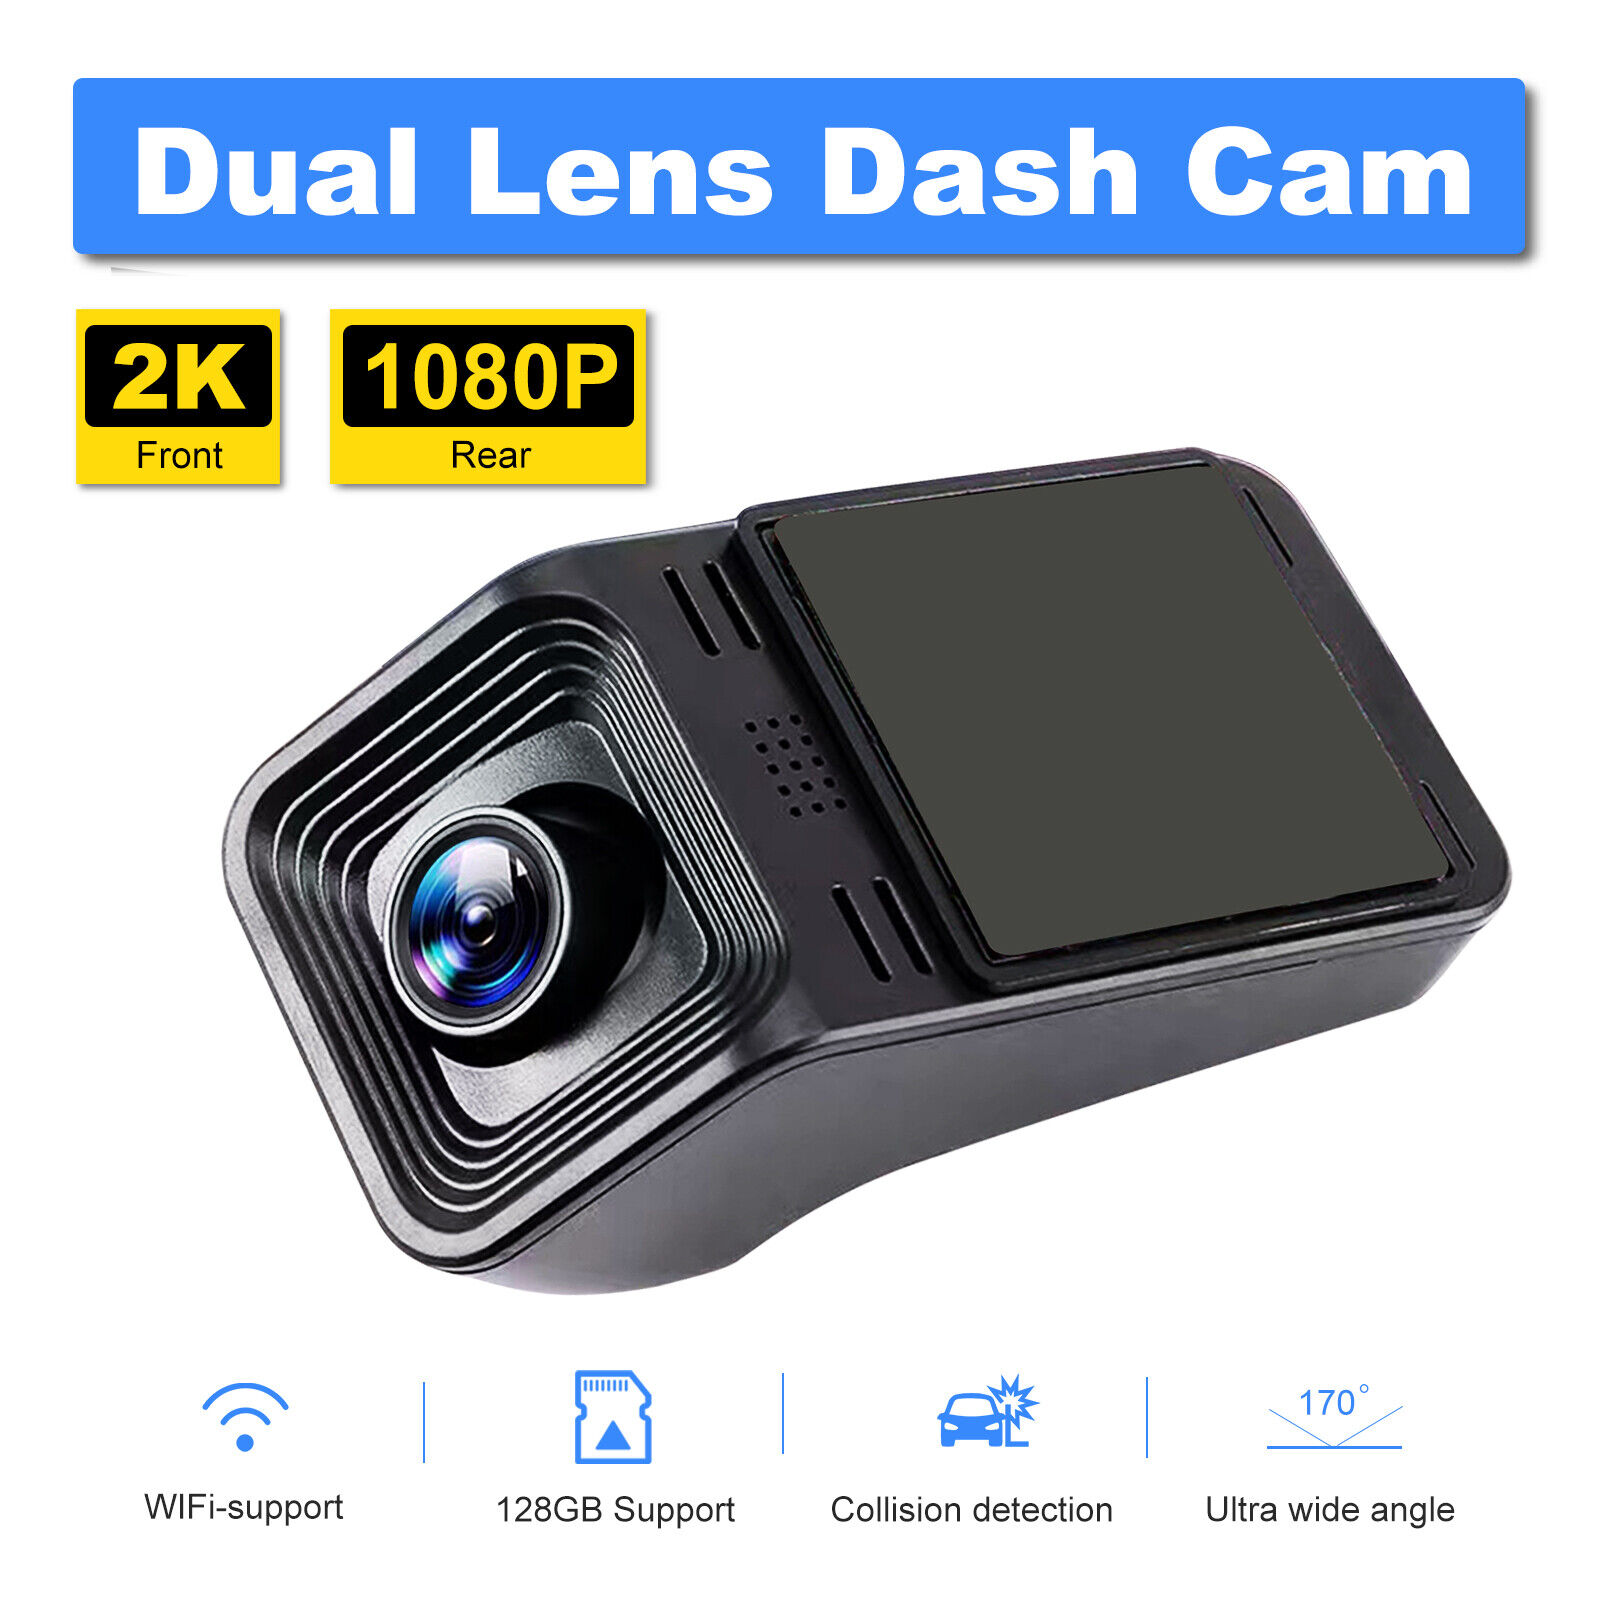 Rove R2-4K UltraHD Dash Cam - Black for sale online